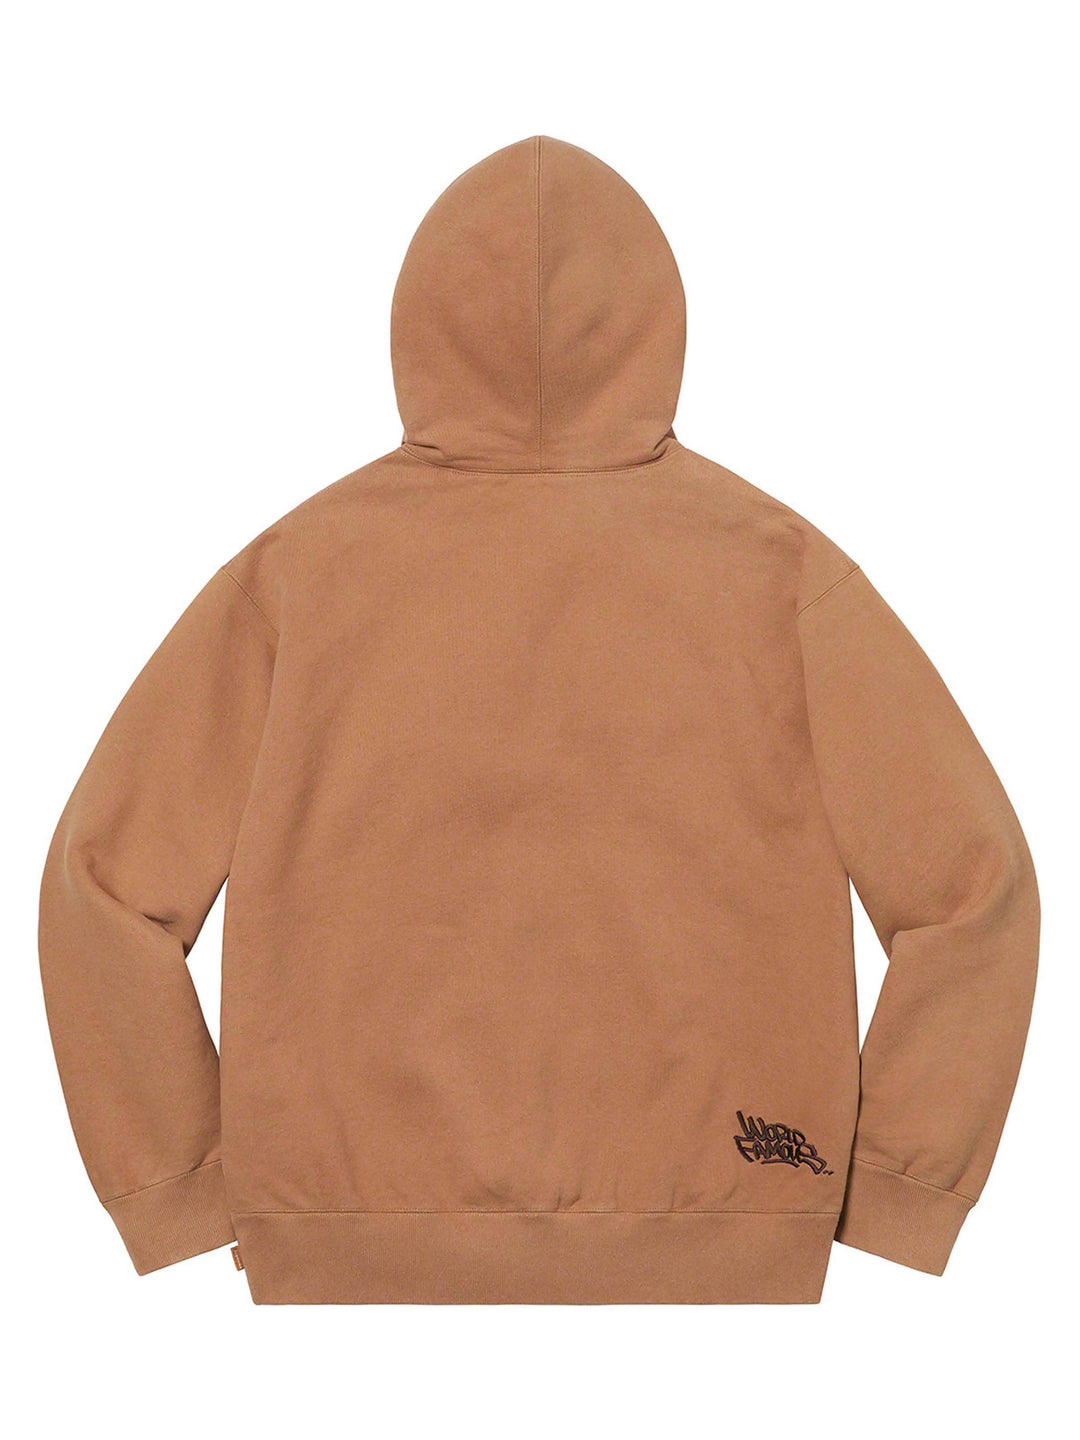 Supreme Handstyle Hooded Sweatshirt Brown [SS21] Prior